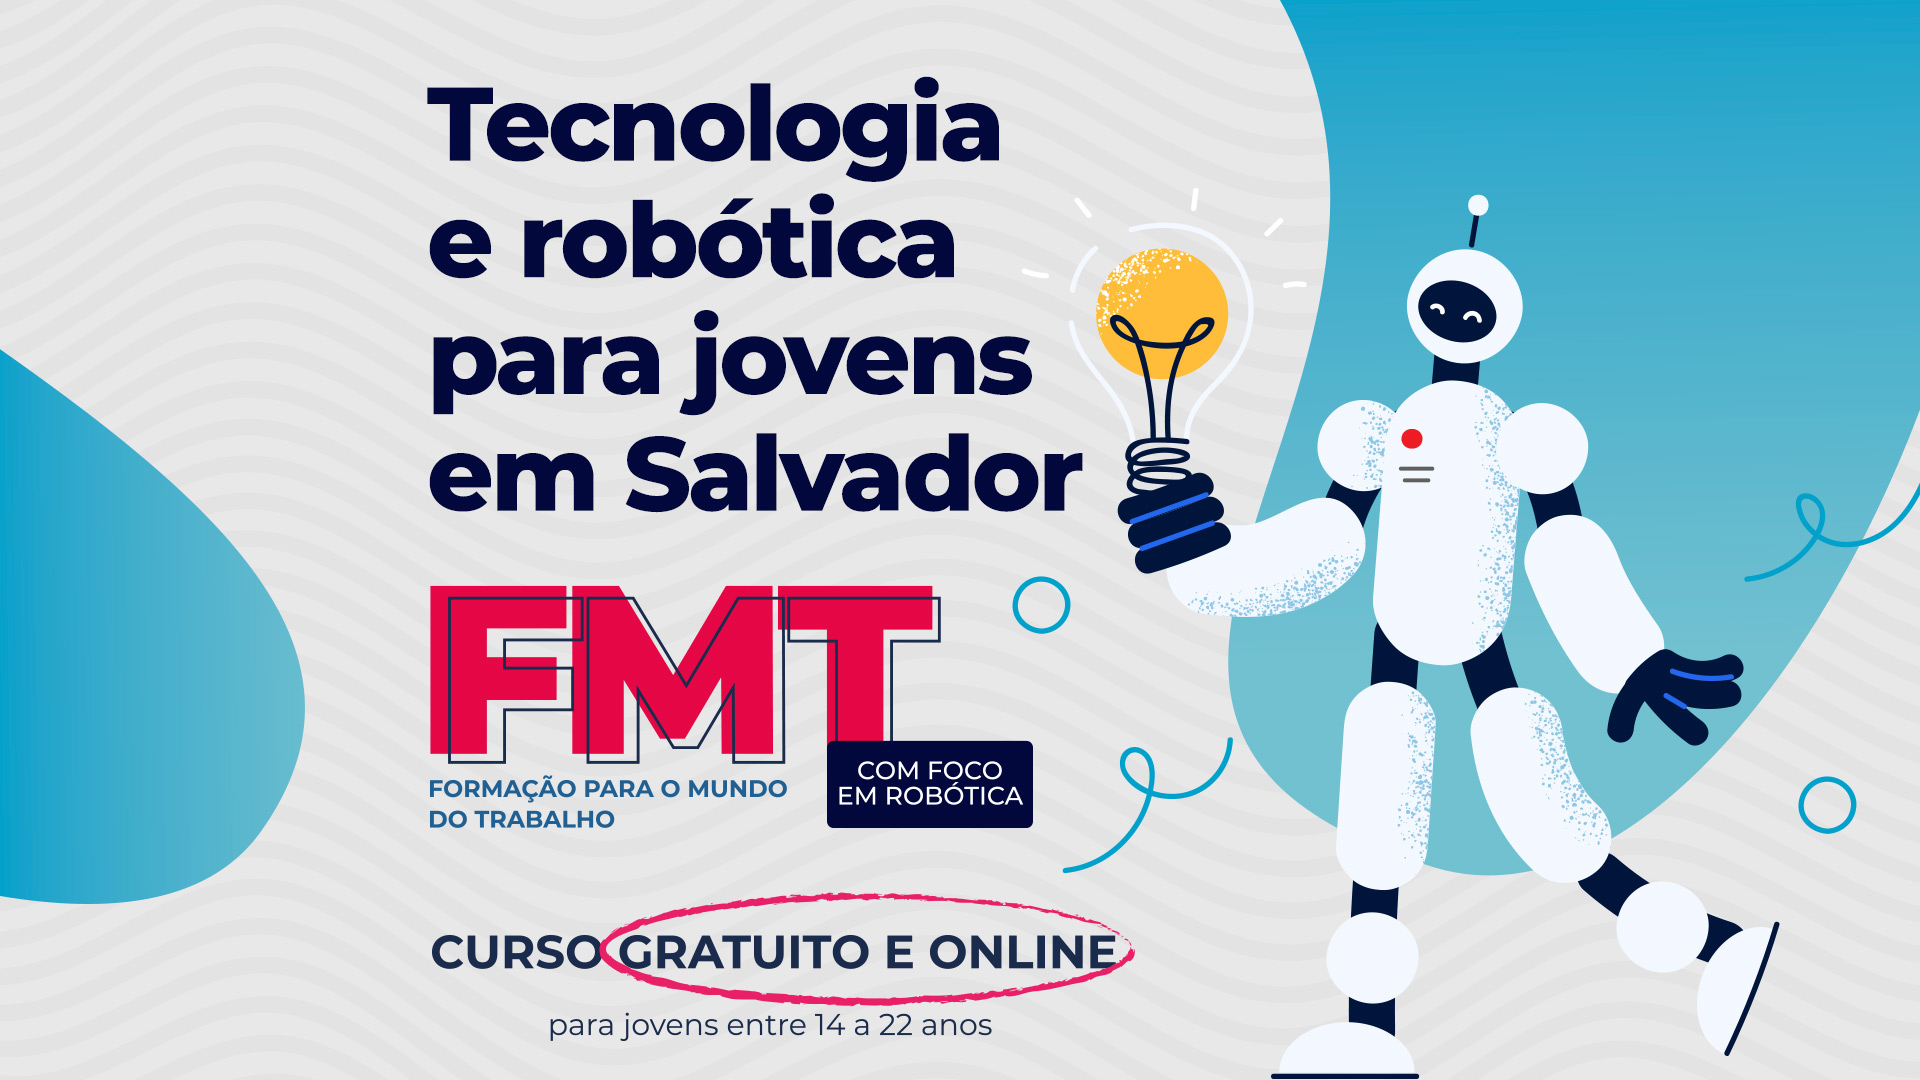 Arte gráfica com representação de robô e destaque para a chamada: tecnologia e robótica para jovens de Salvador